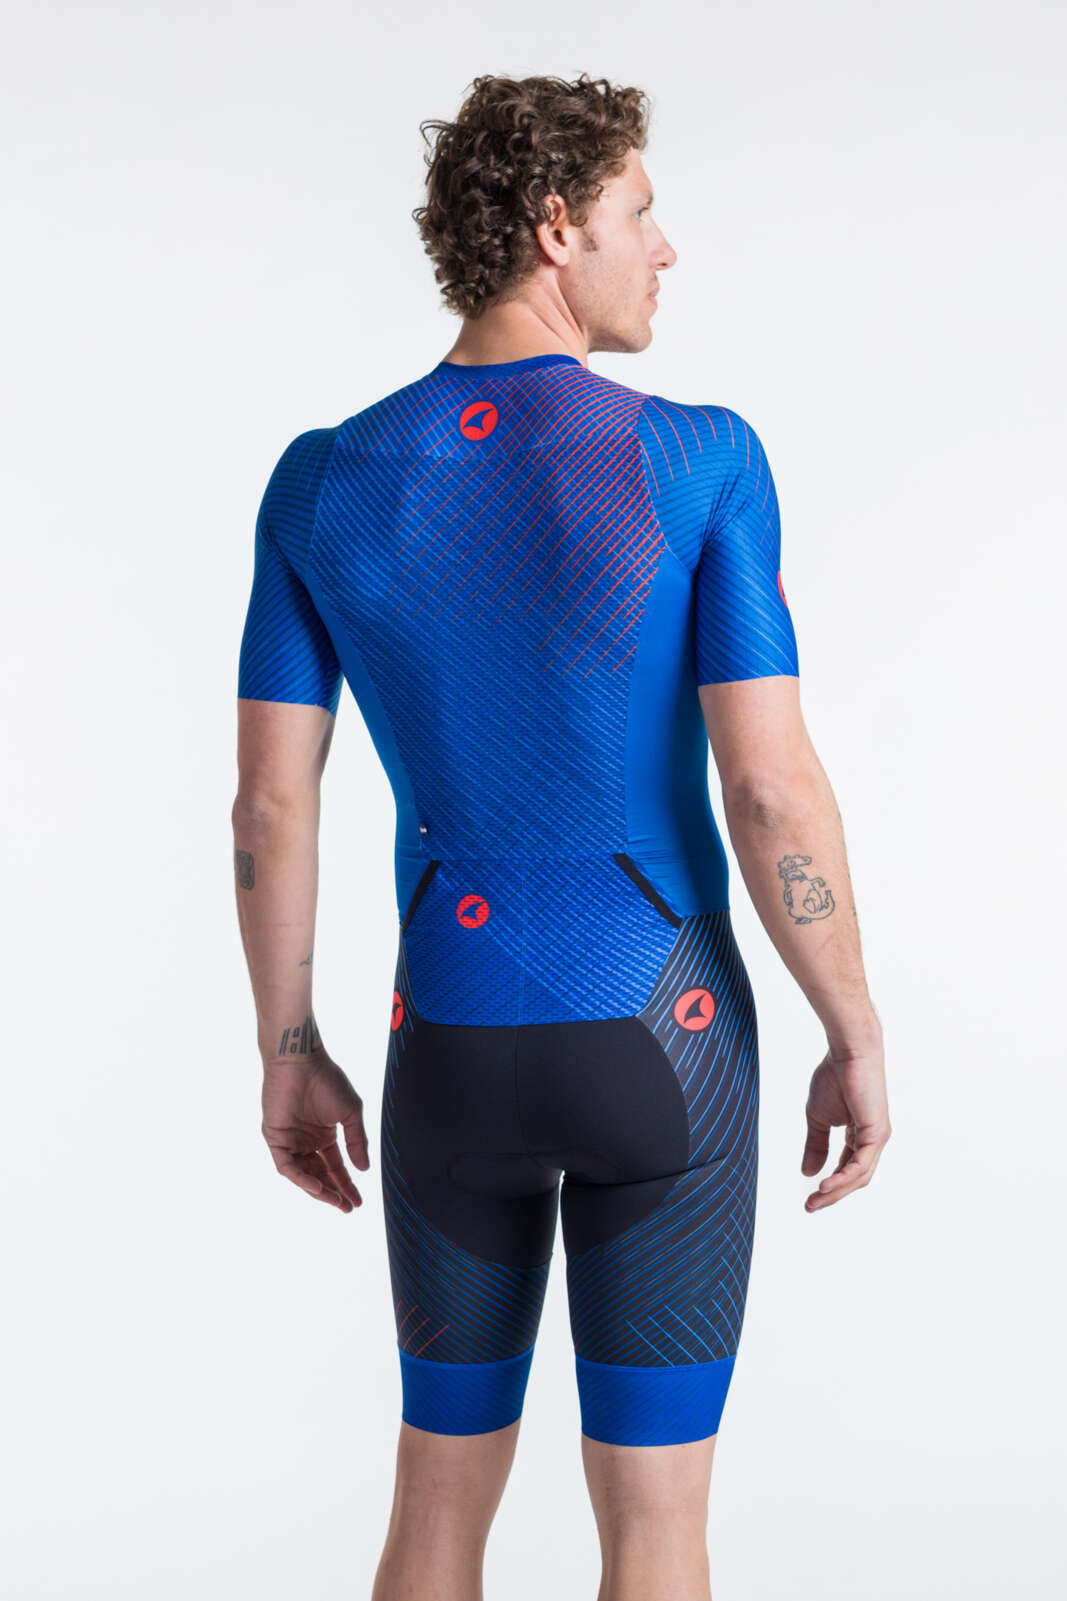 Men's Triathlon Suit - Blue Short Sleeve Back View